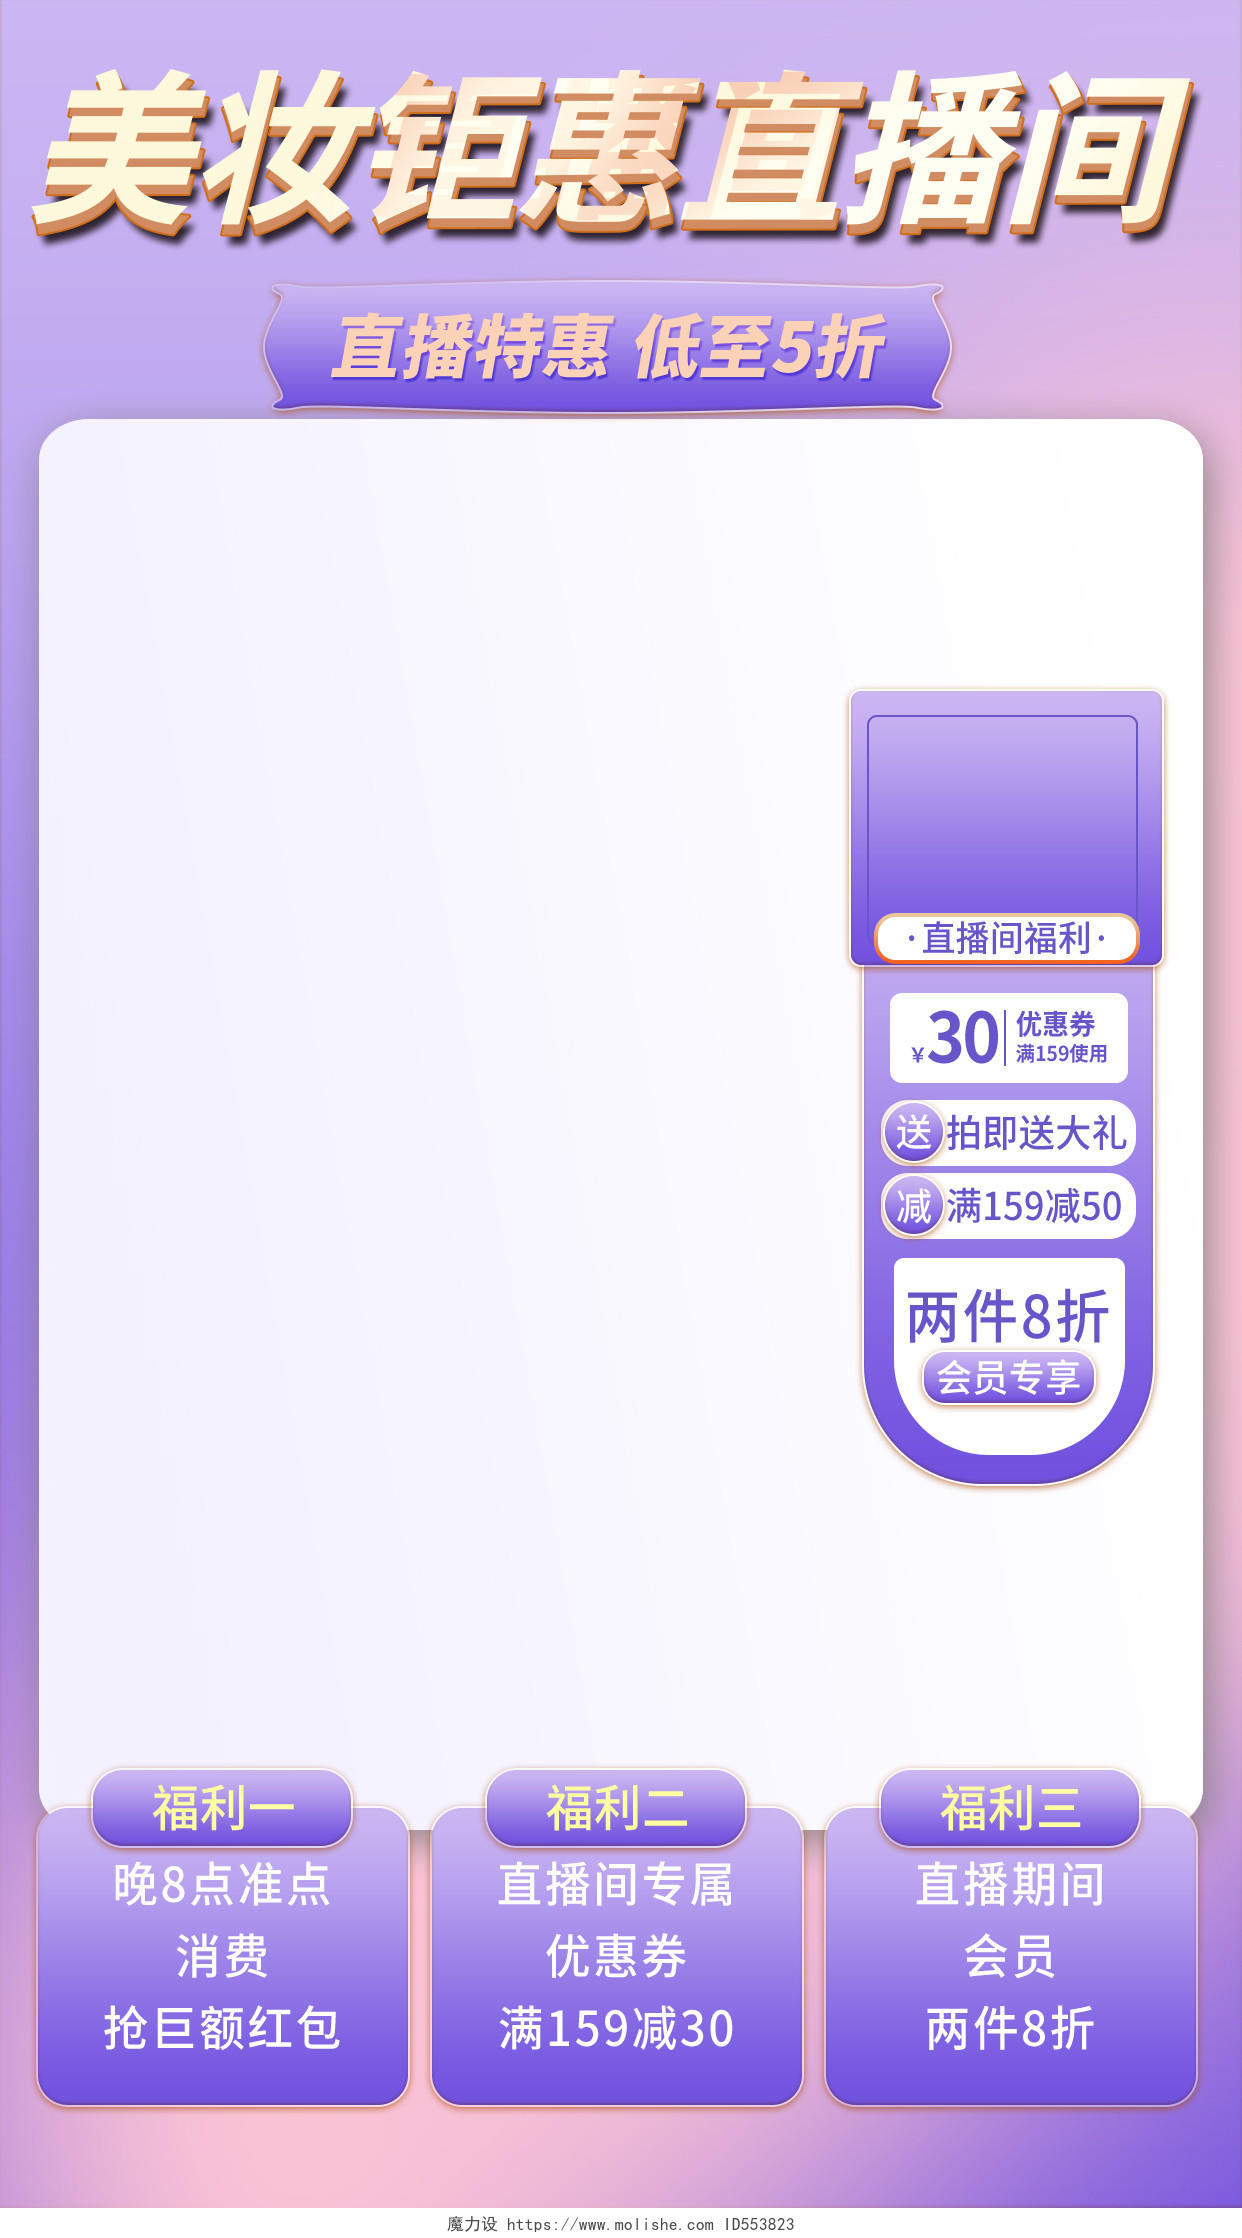 紫色渐变美妆钜惠手机端直播间背景贴图直播间背景贴片框